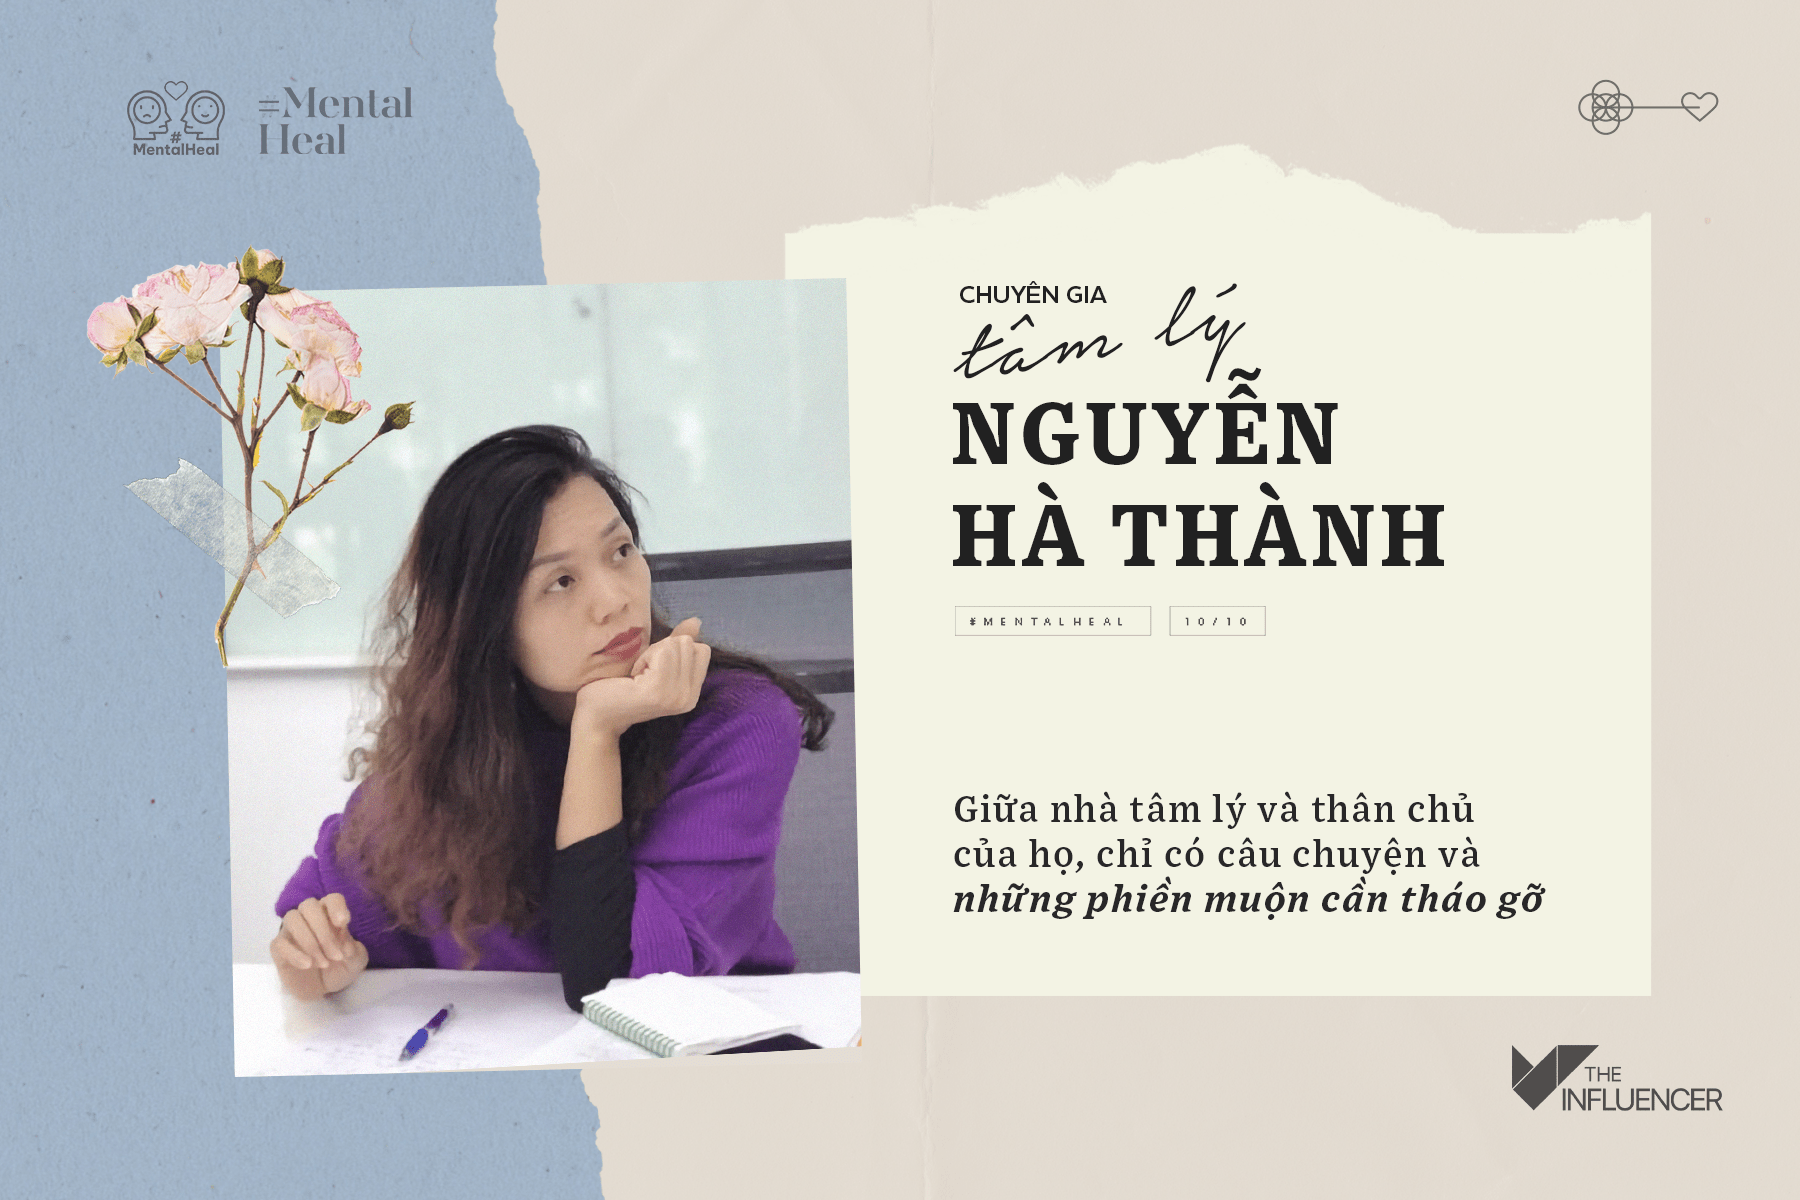 Chuyên gia tâm lý Nguyễn Hà Thành -  Giữa nhà tâm lý và thân chủ của họ, chỉ có câu chuyện và những phiền muộn cần tháo gỡ